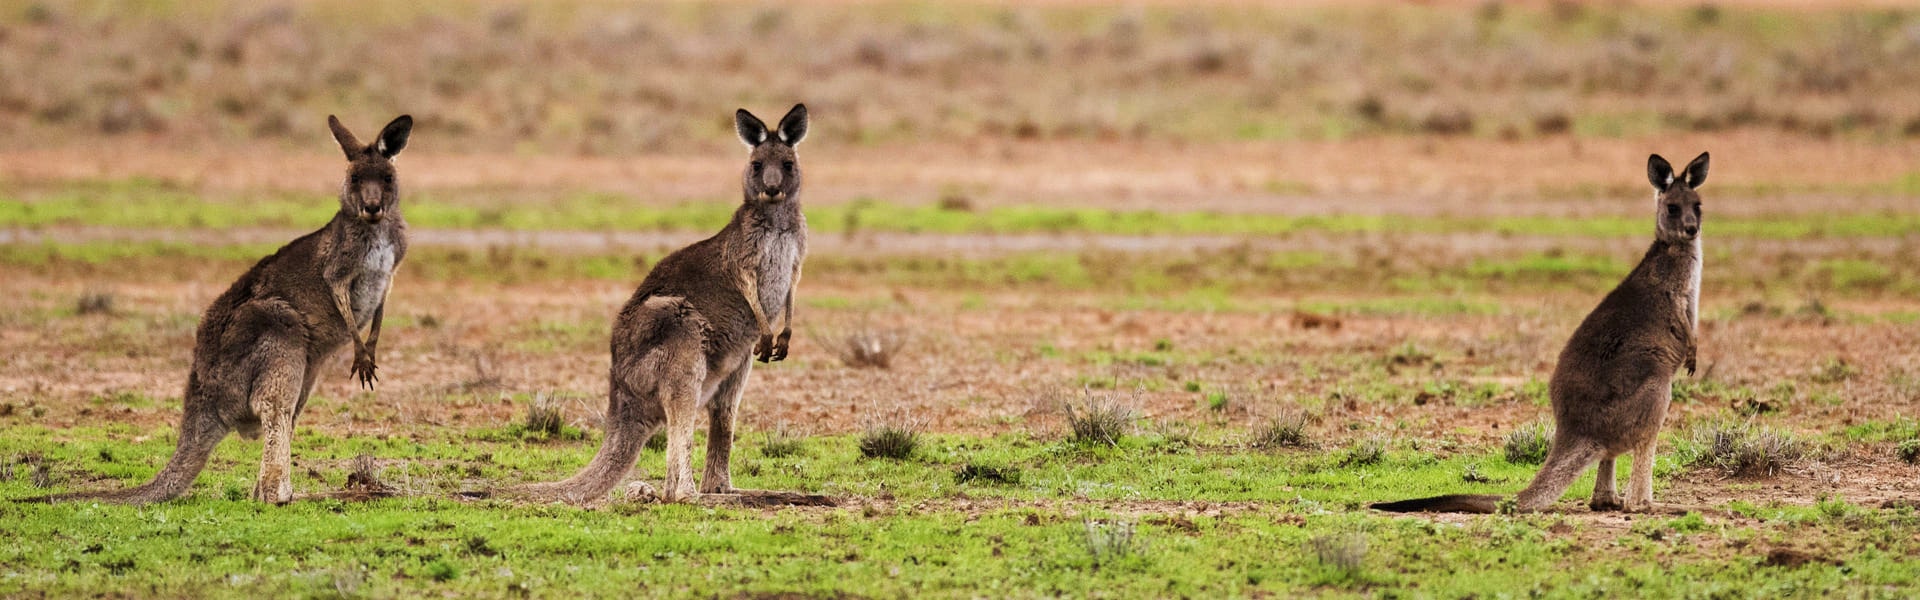 Australia-kanguros